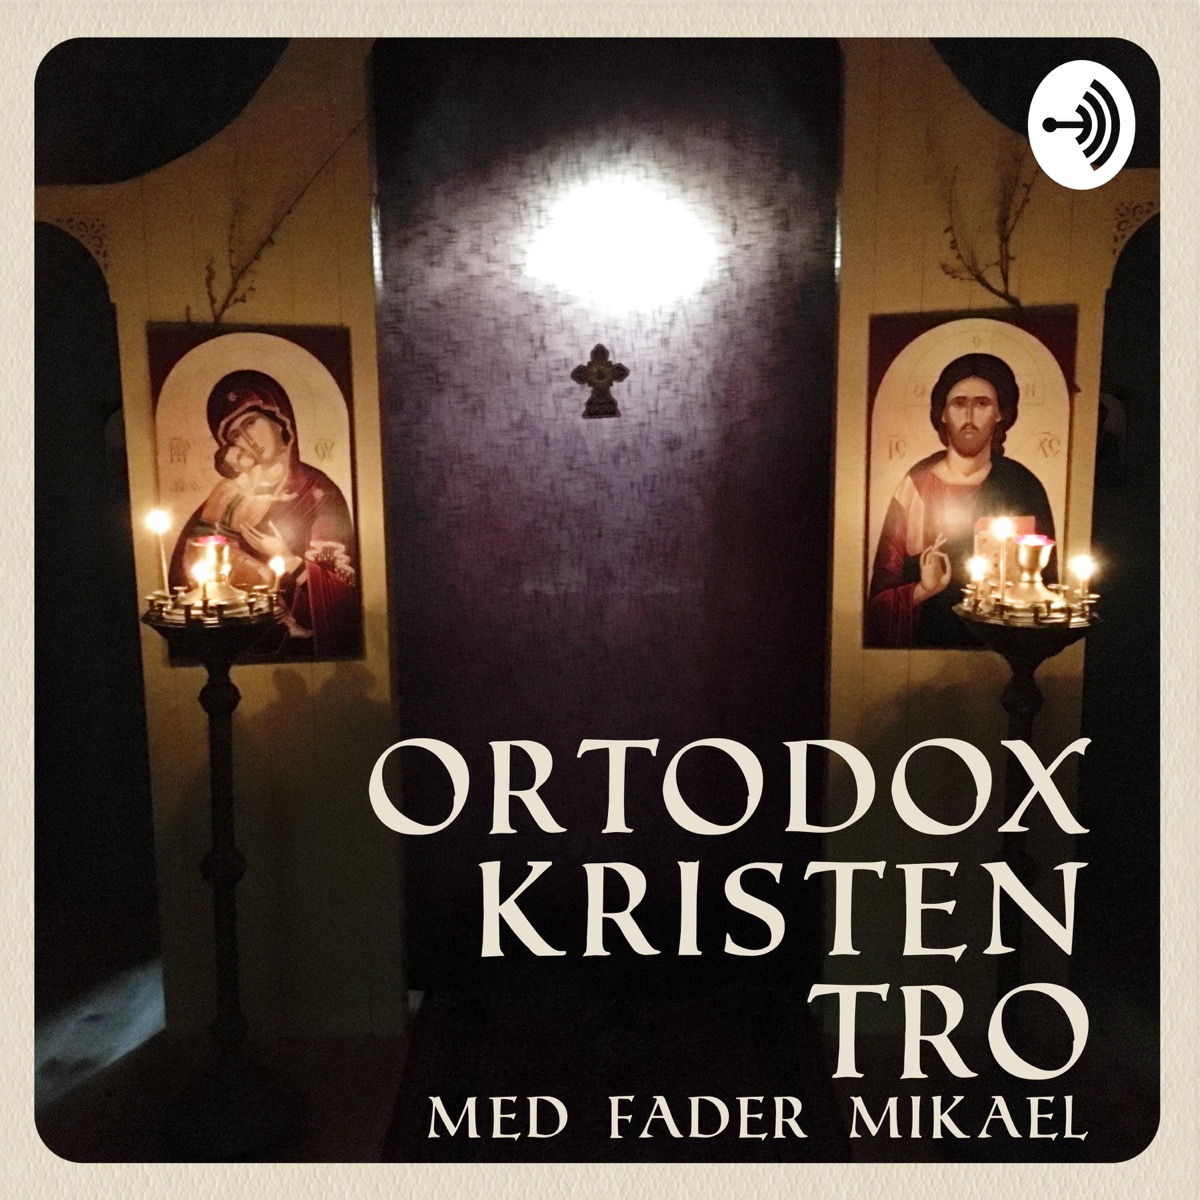 Ortodox kristen tro | Lyssna här | Poddtoppen.se